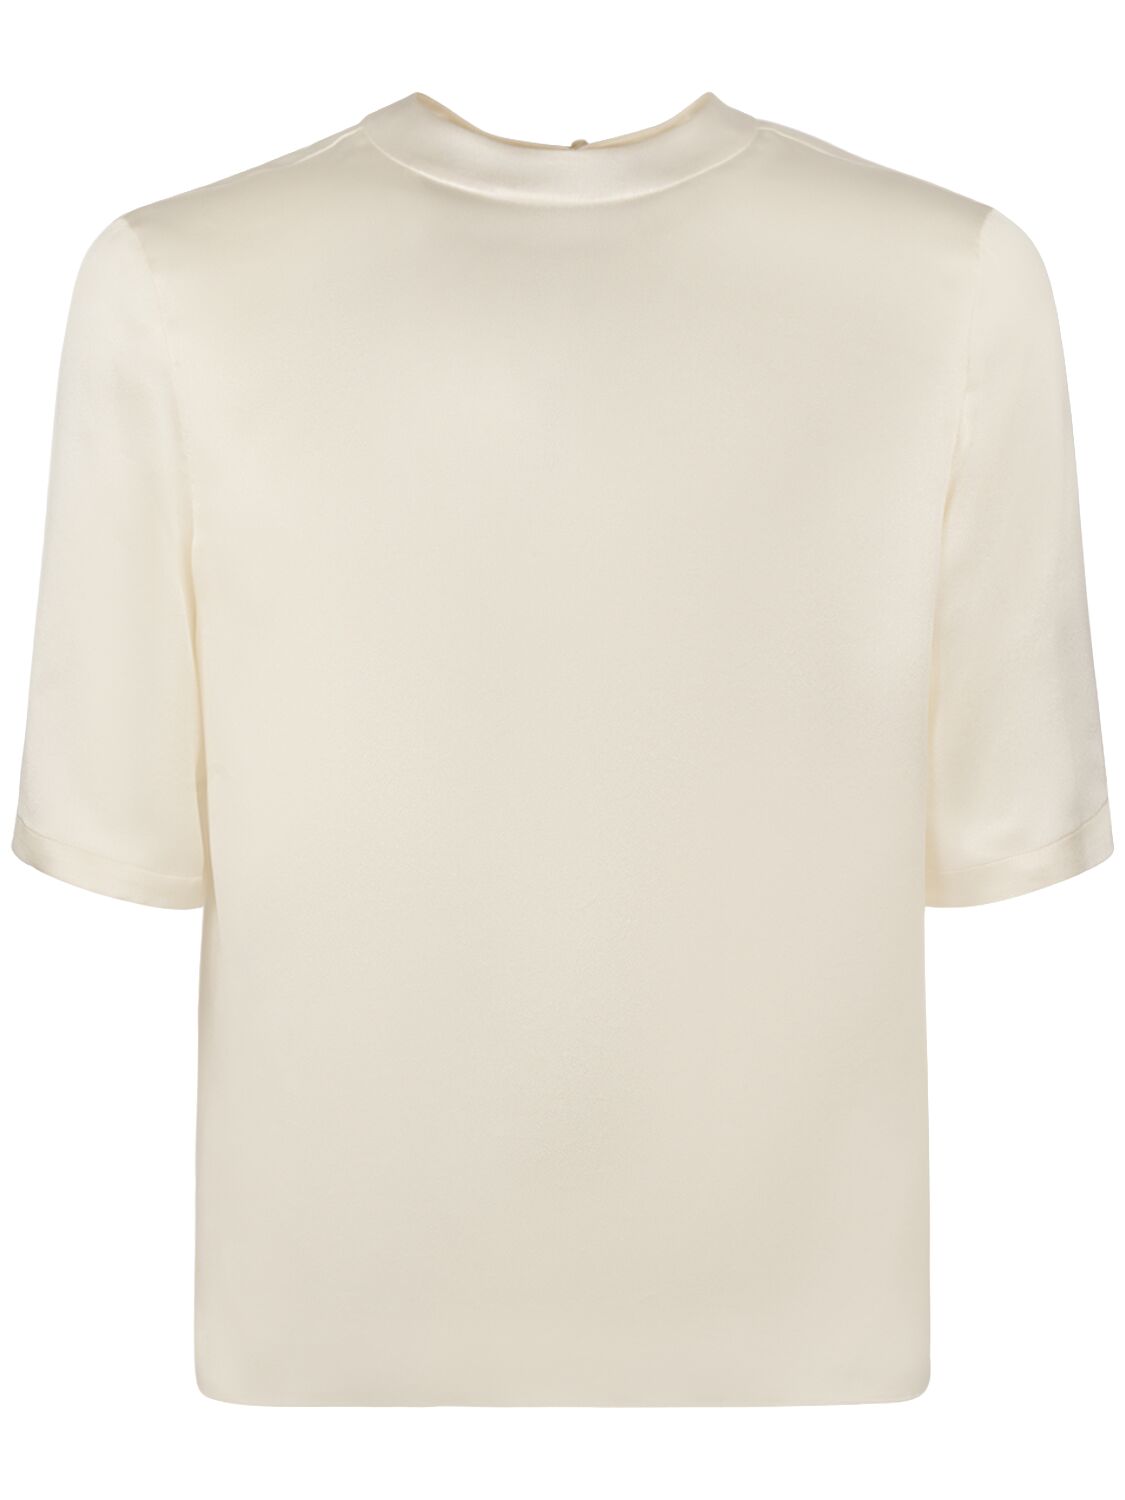 Image of Silk Crepe T-shirt